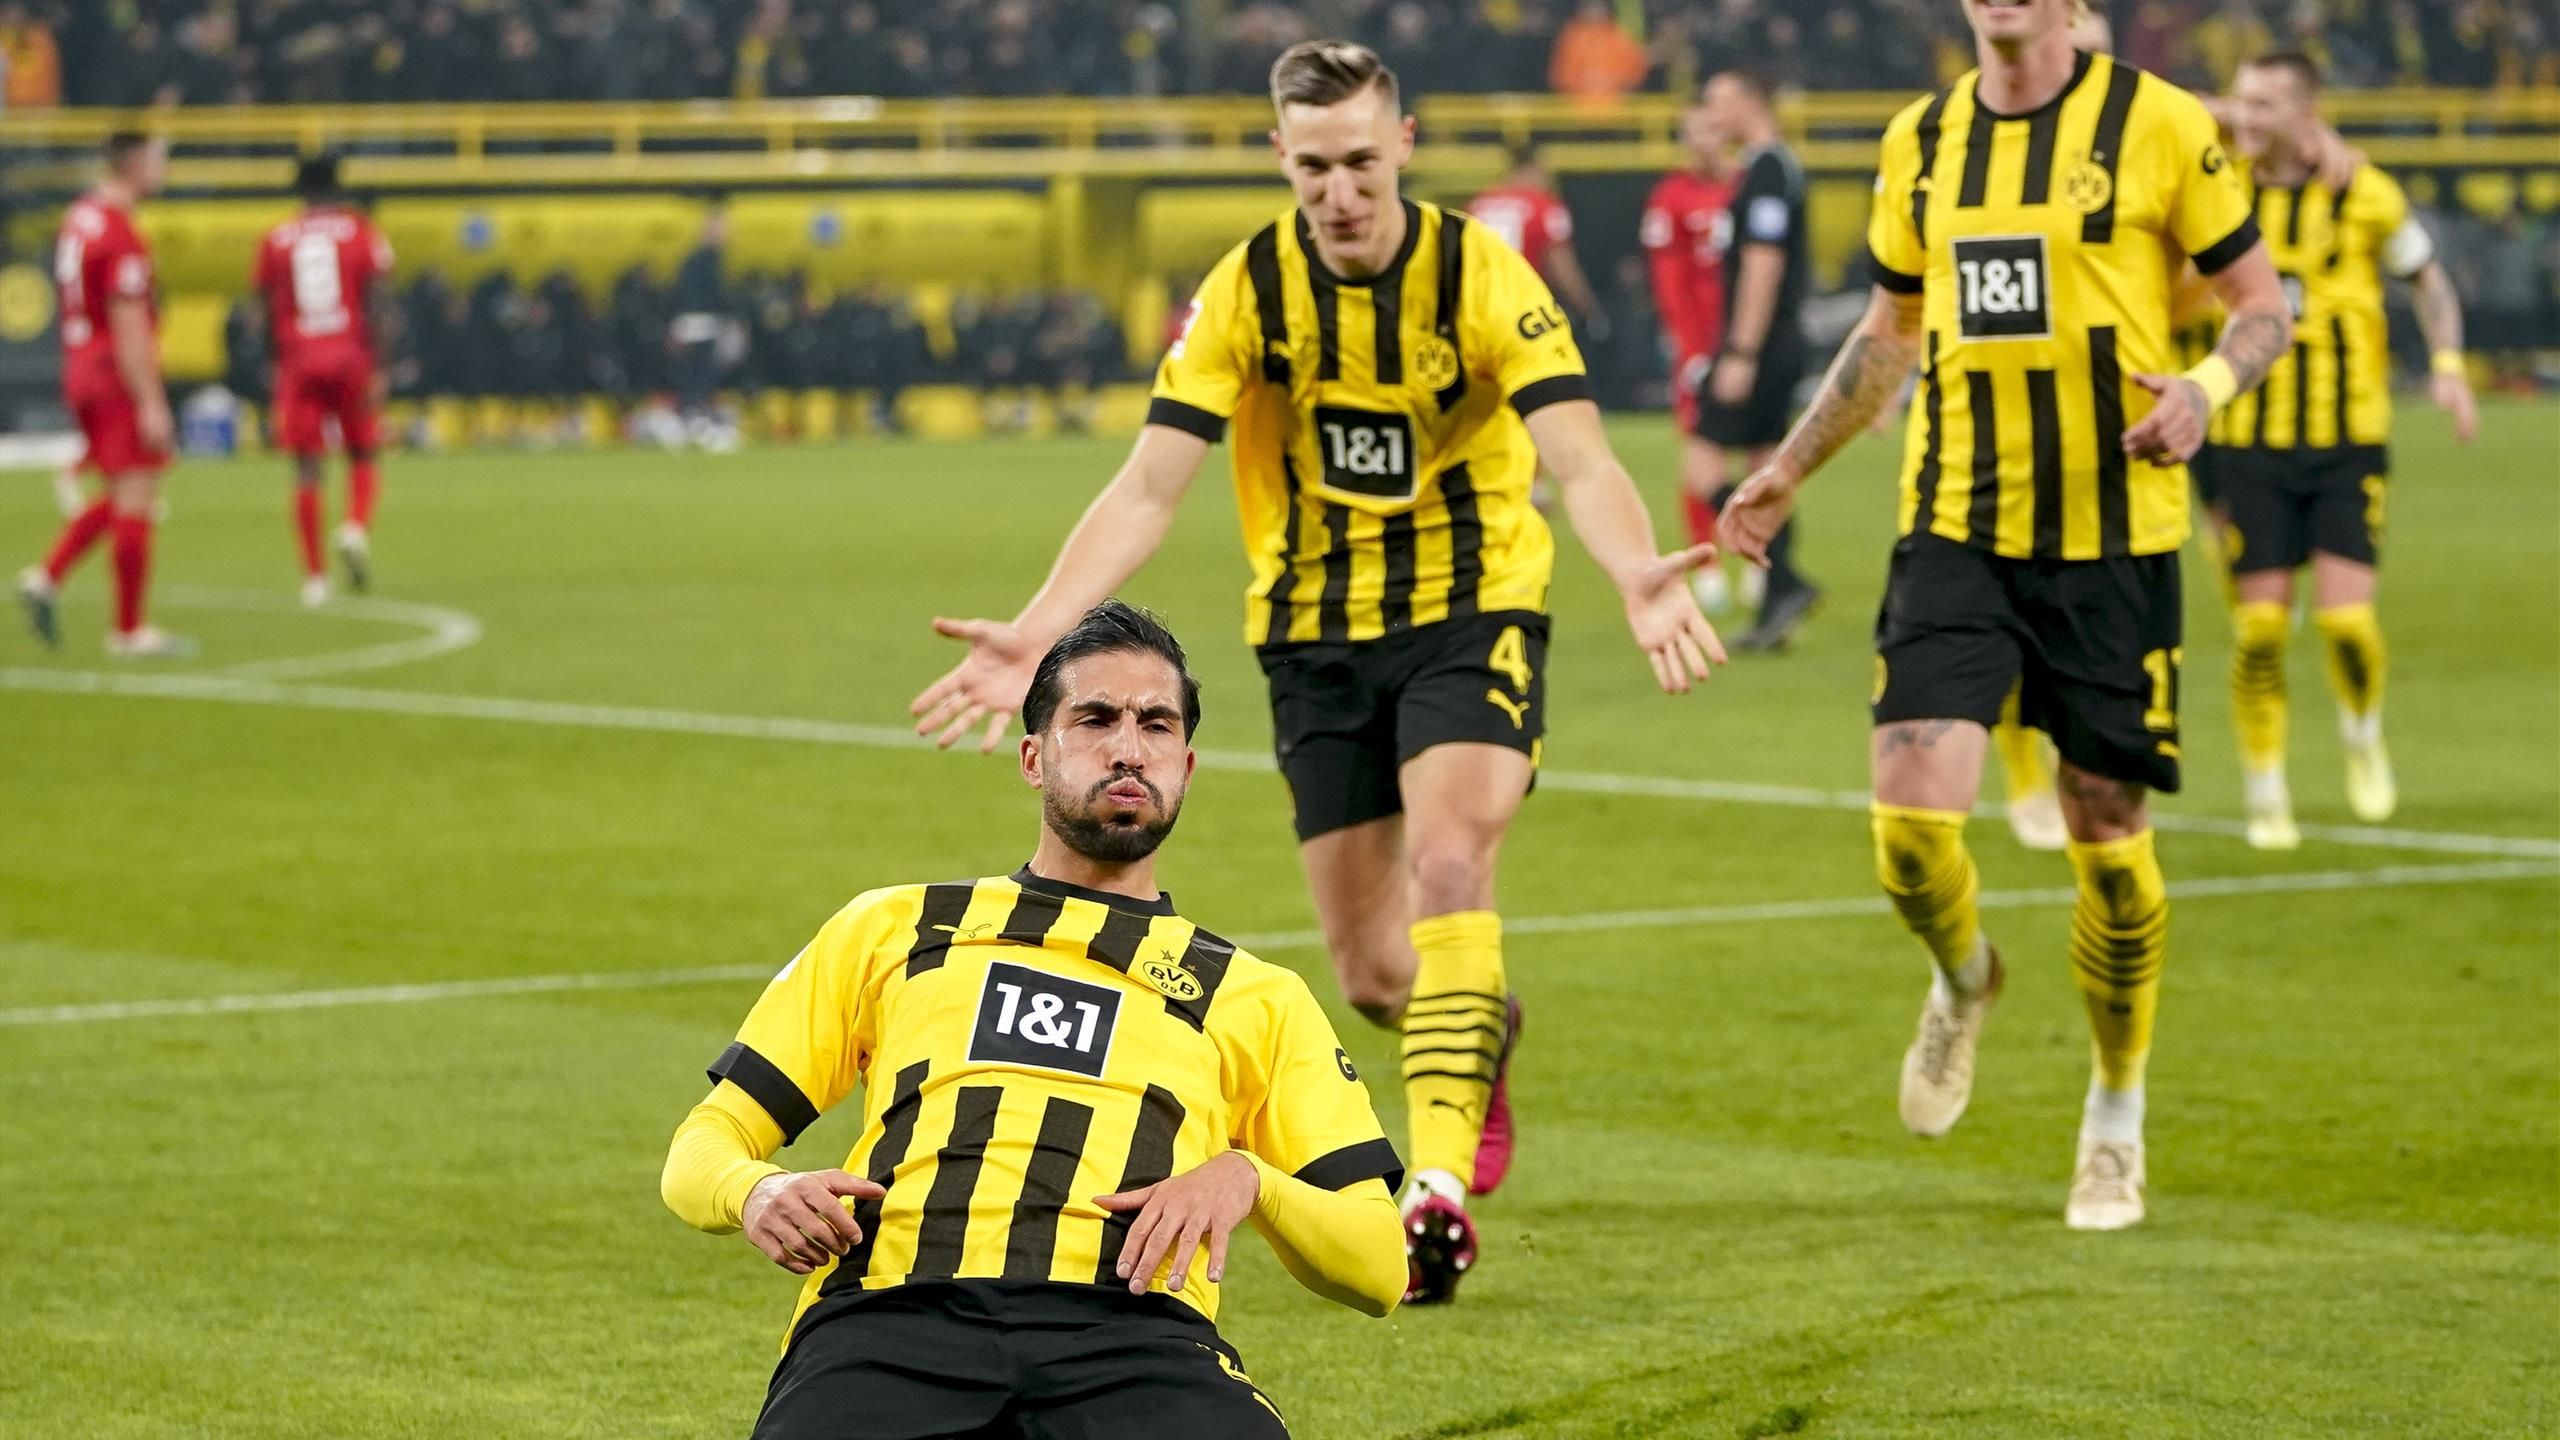 utilgivelig Dam Caius Borussia Dortmund 2-1 RB Leipzig: Marco Reus and Emre Can goals fire BVB to  top of Bundesliga table - Eurosport